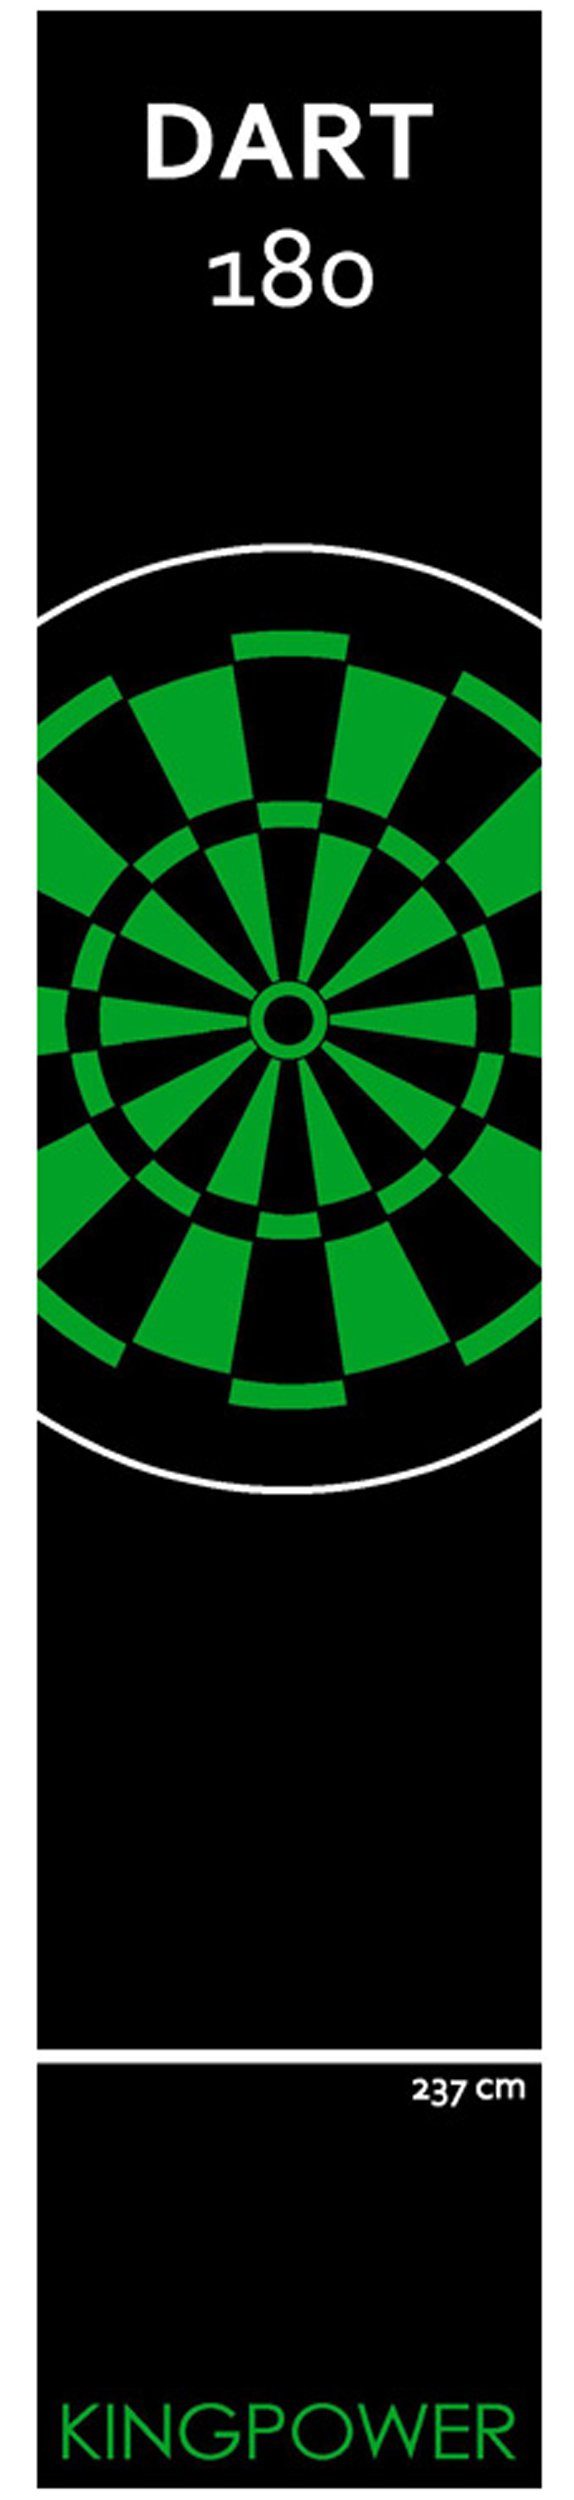 Kingpower Dartmatte Dart Matte Dartteppich Turnier Matte Dartmatte Darts 2 Größen Kingpower Design 23 Grün